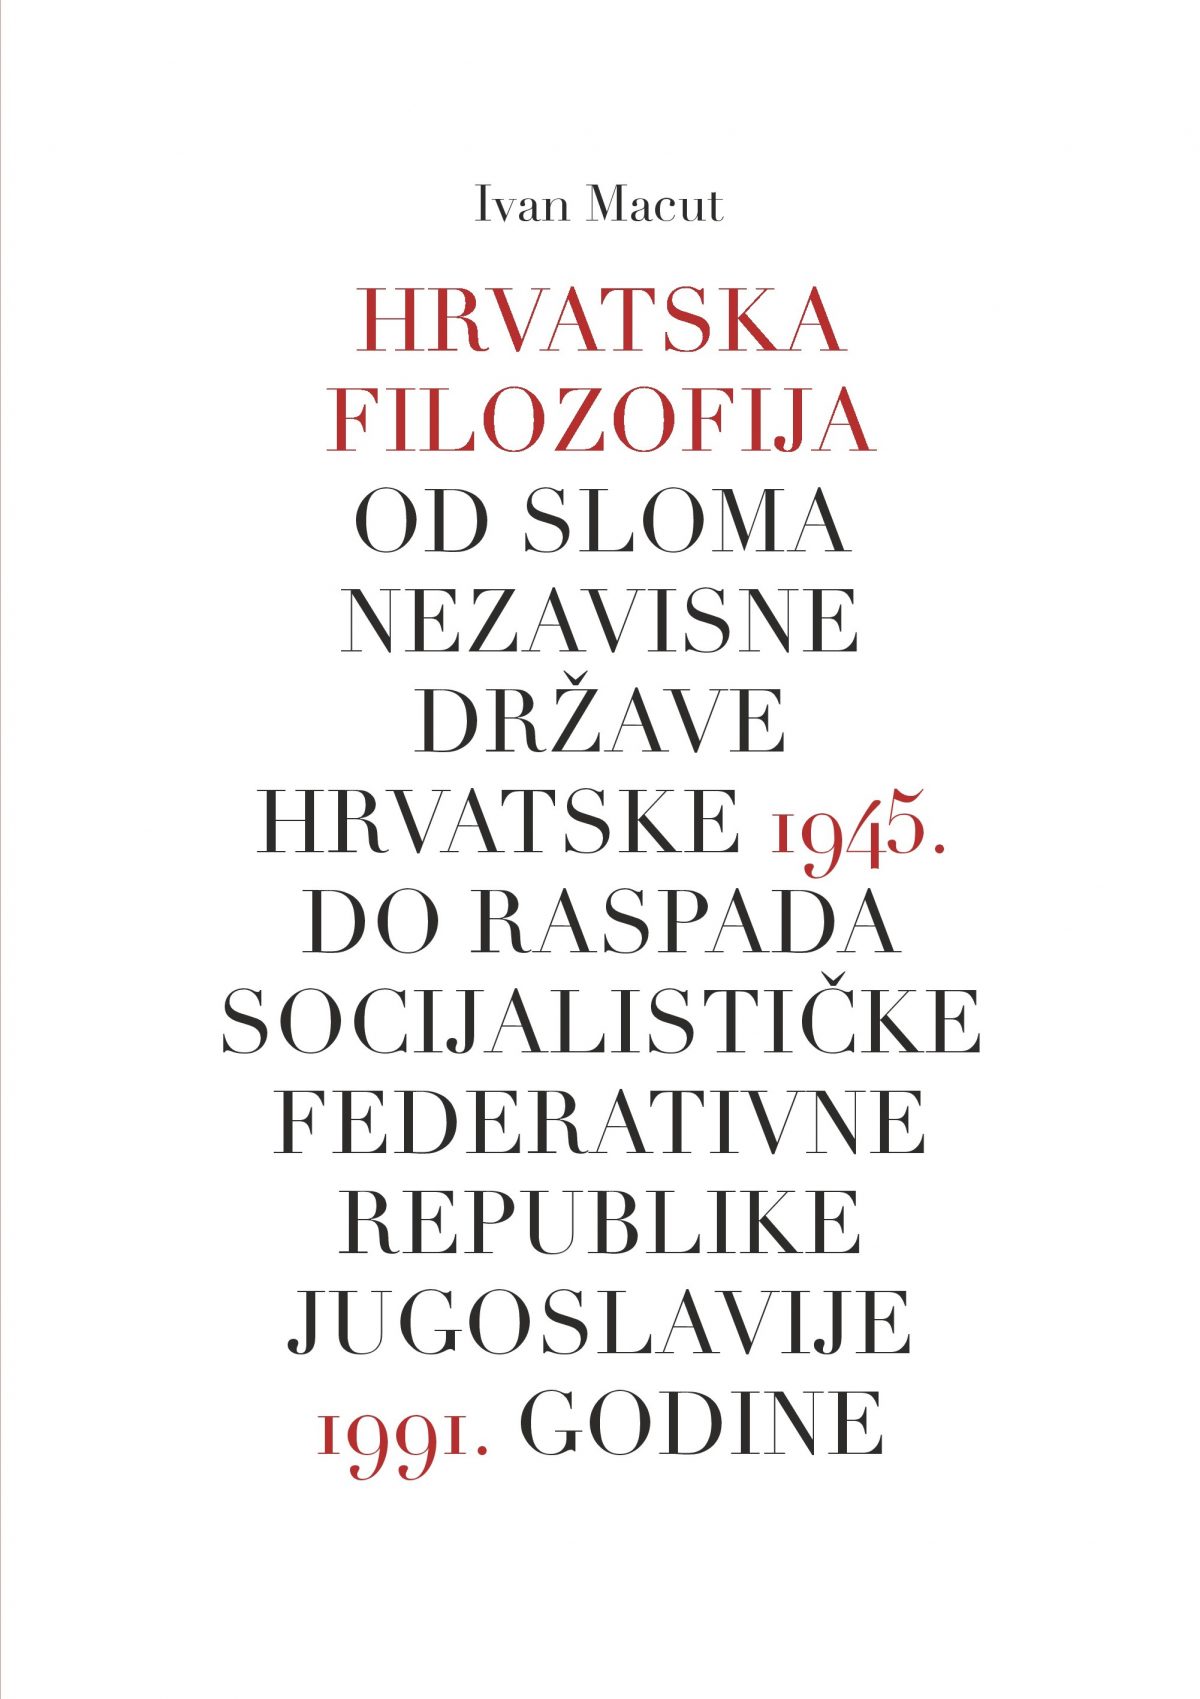 Hrvatska filozofija od sloma Nezavisne Države Hrvatske 1945. do raspada Socijalističke Federativne Republike Jugoslavije 1991. godine